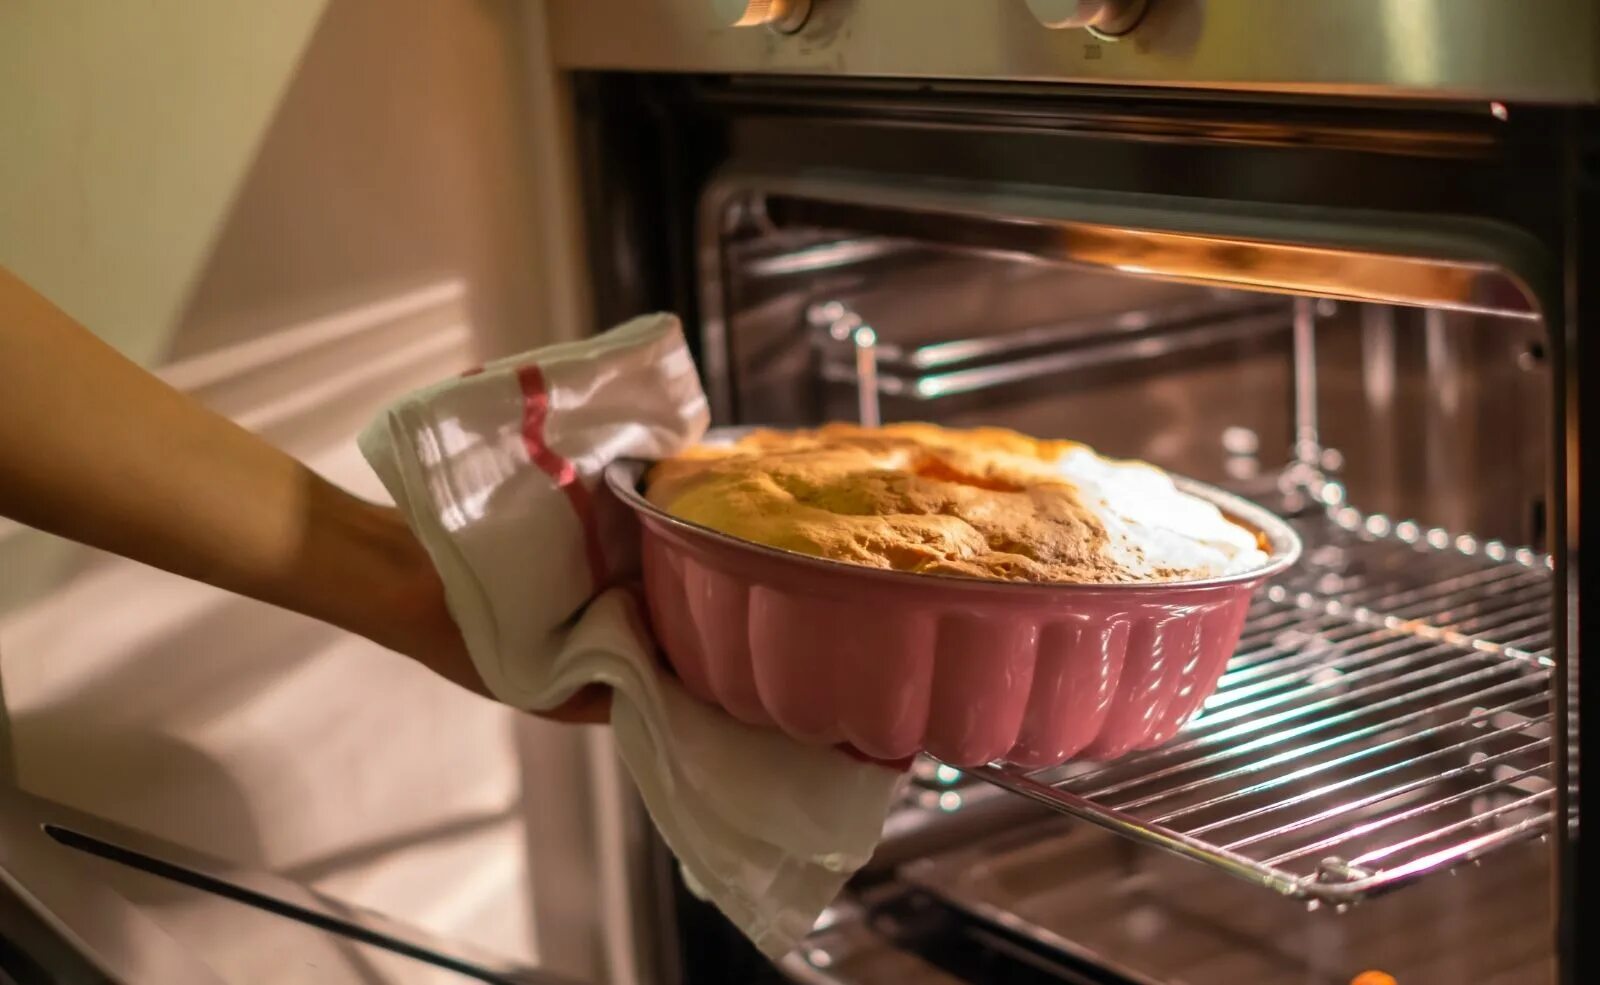 Baking Oven. Выпекание в духовке красители. Oven Baked. Духовка которая печет пироги и торта. В микроволновке можно печь пироги